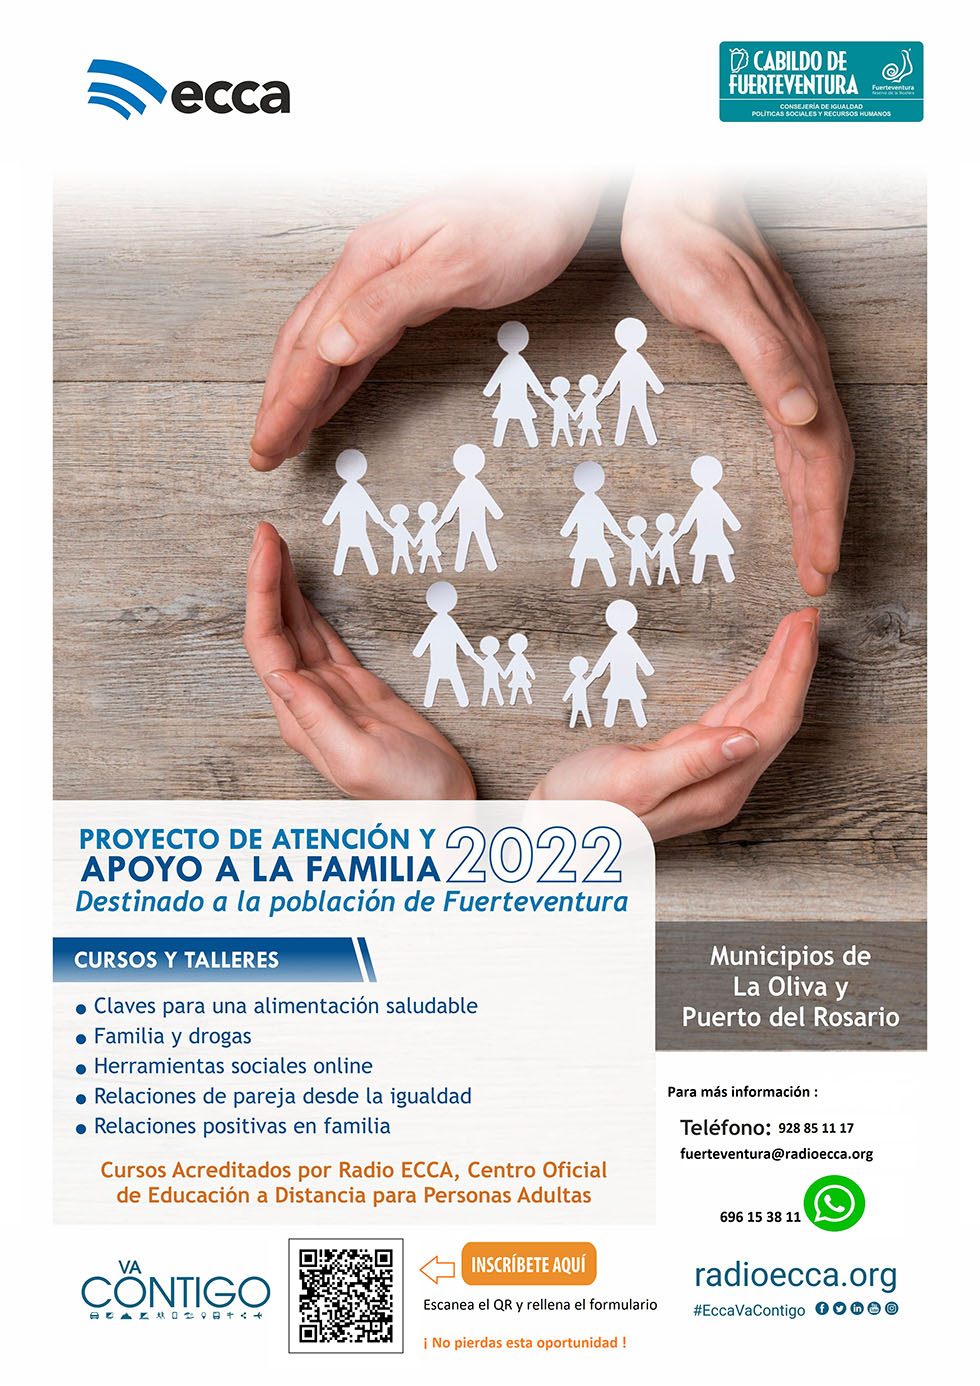 Fuerteventura Radio ECCA forman a las familias en alimentación saludable, herramientas sociales y positivas | Diario de